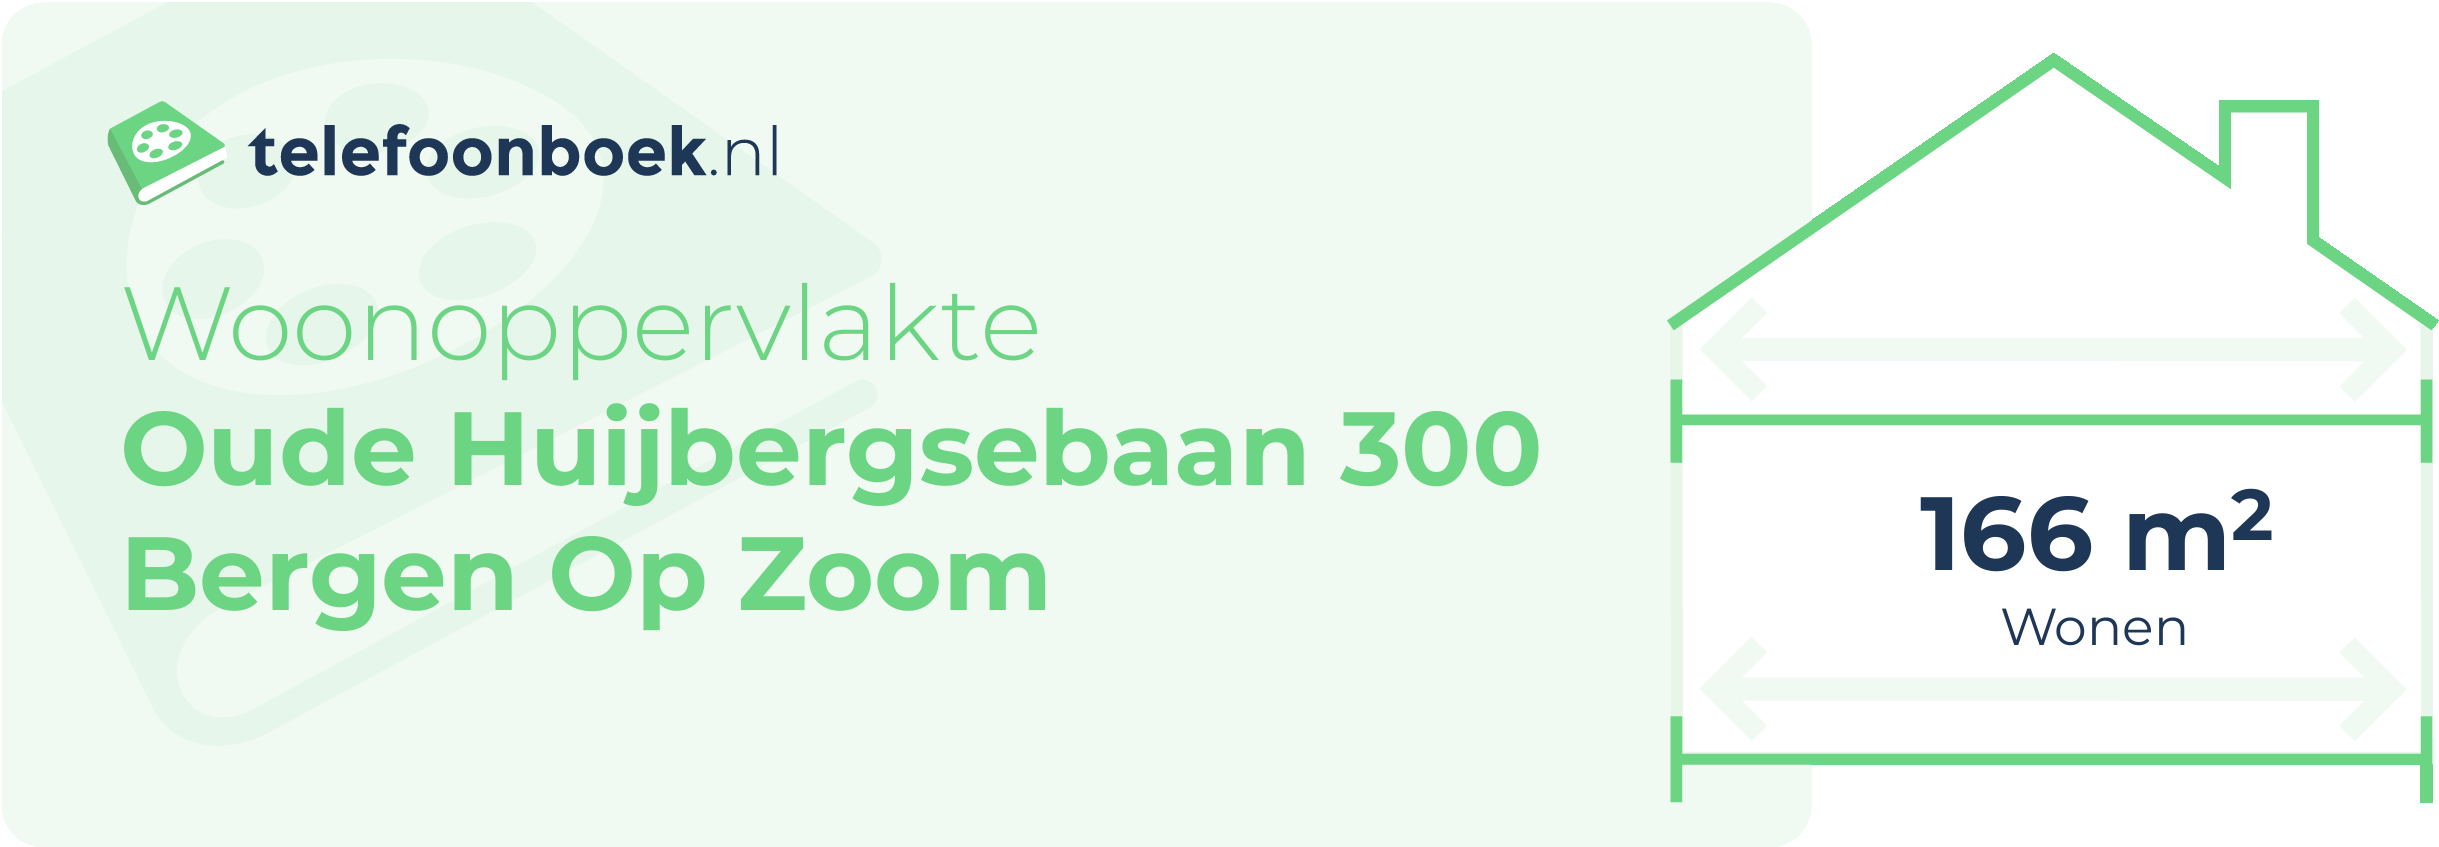 Woonoppervlakte Oude Huijbergsebaan 300 Bergen Op Zoom